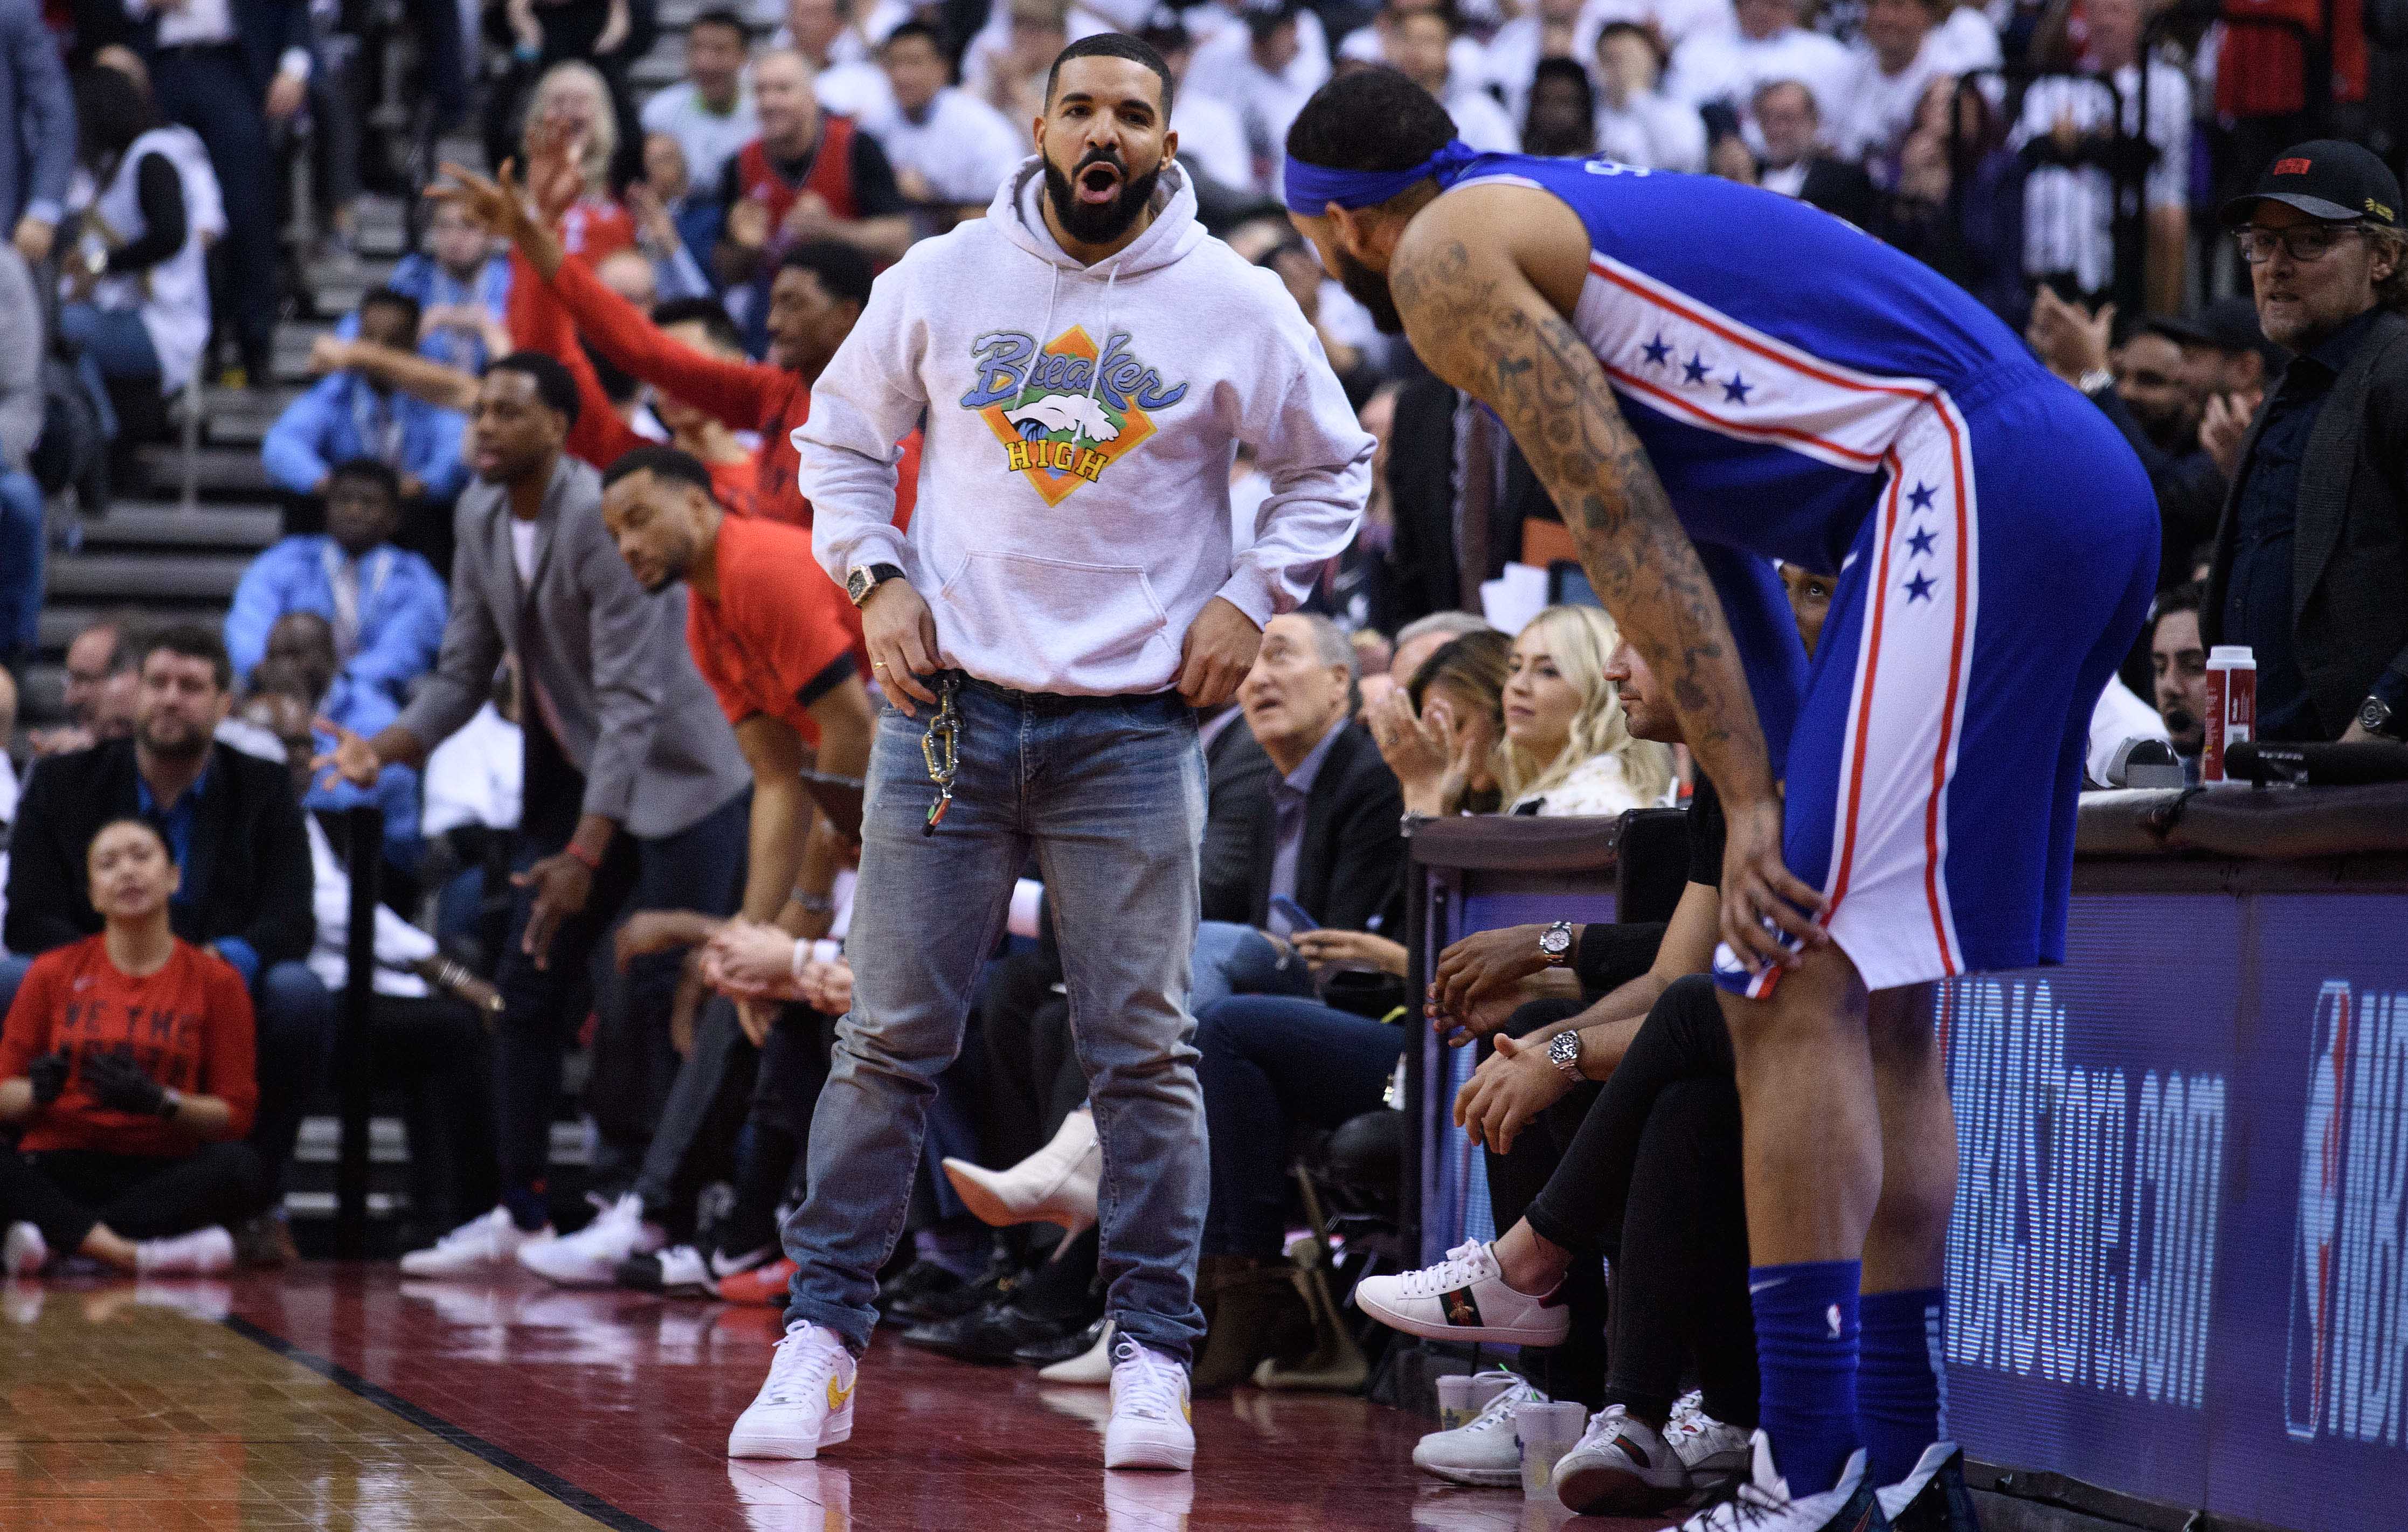 Drake at the Raptors game